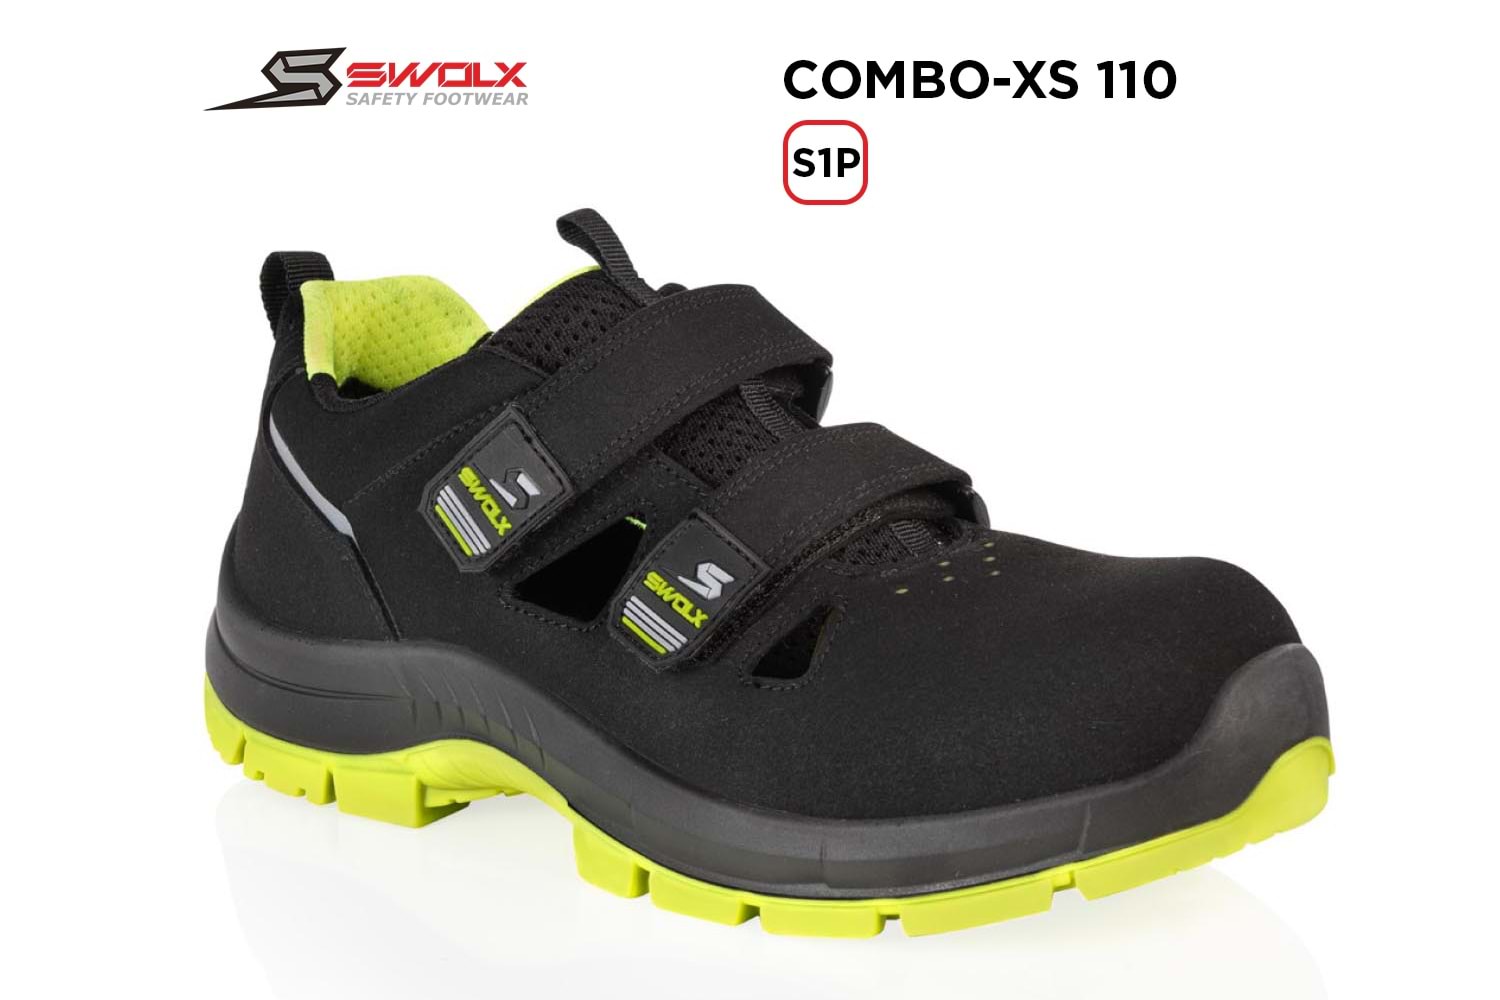 Swolx İş Ayakkabısı - Combo-Xs 110 S1P (Sun-X 110) - 42